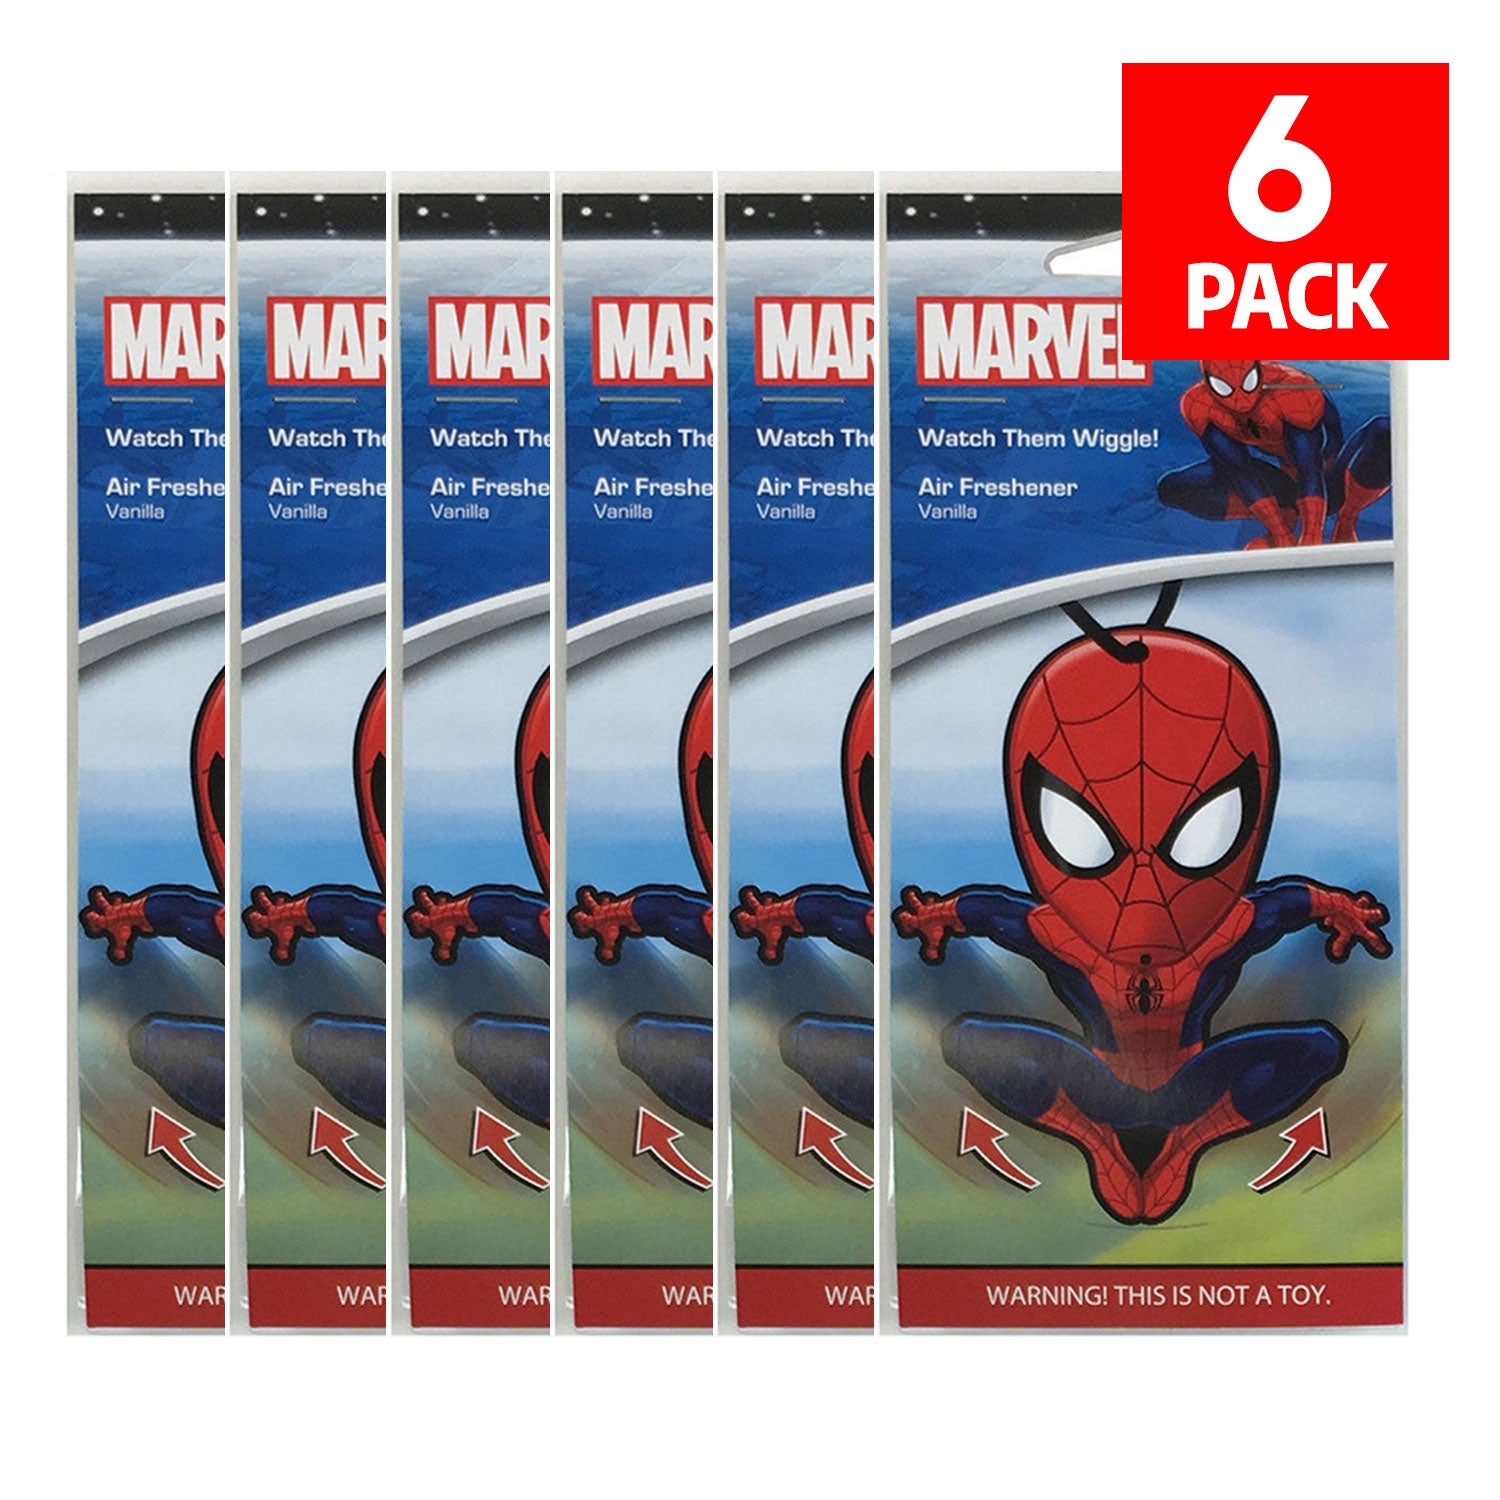 Broers en zussen Uitstekend Moedig Marvel Spiderman Car Accessories - Spiderman Air Freshener Wiggler (6-Pack)  by GOSO Direct